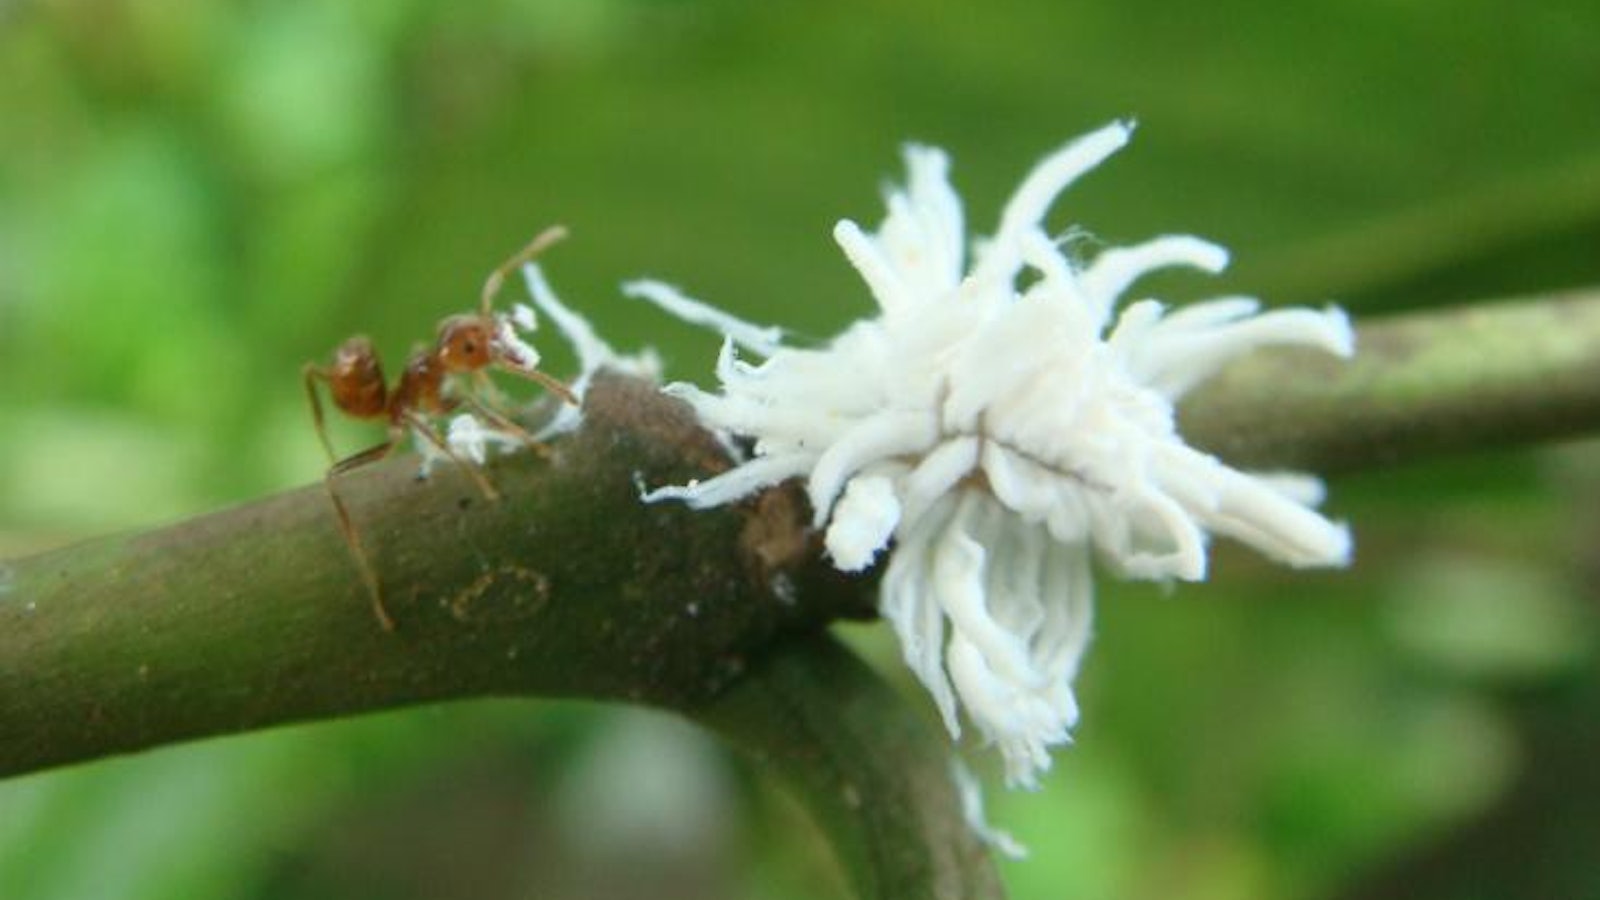 Ant vs beetle larva 